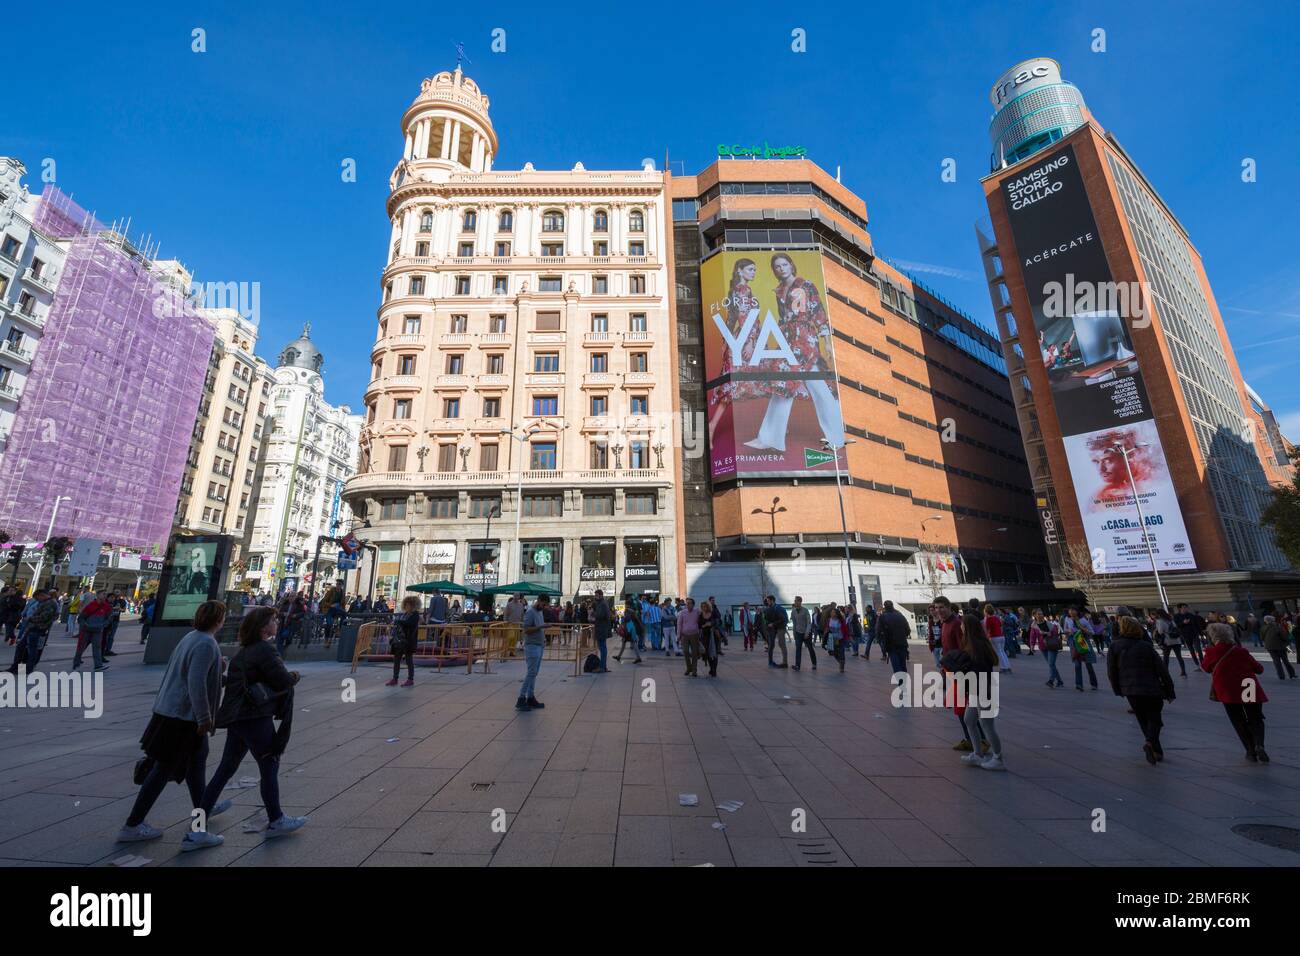 Vue sur l'architecture de la Plaza del Callao, Madrid, Espagne, Europe Banque D'Images